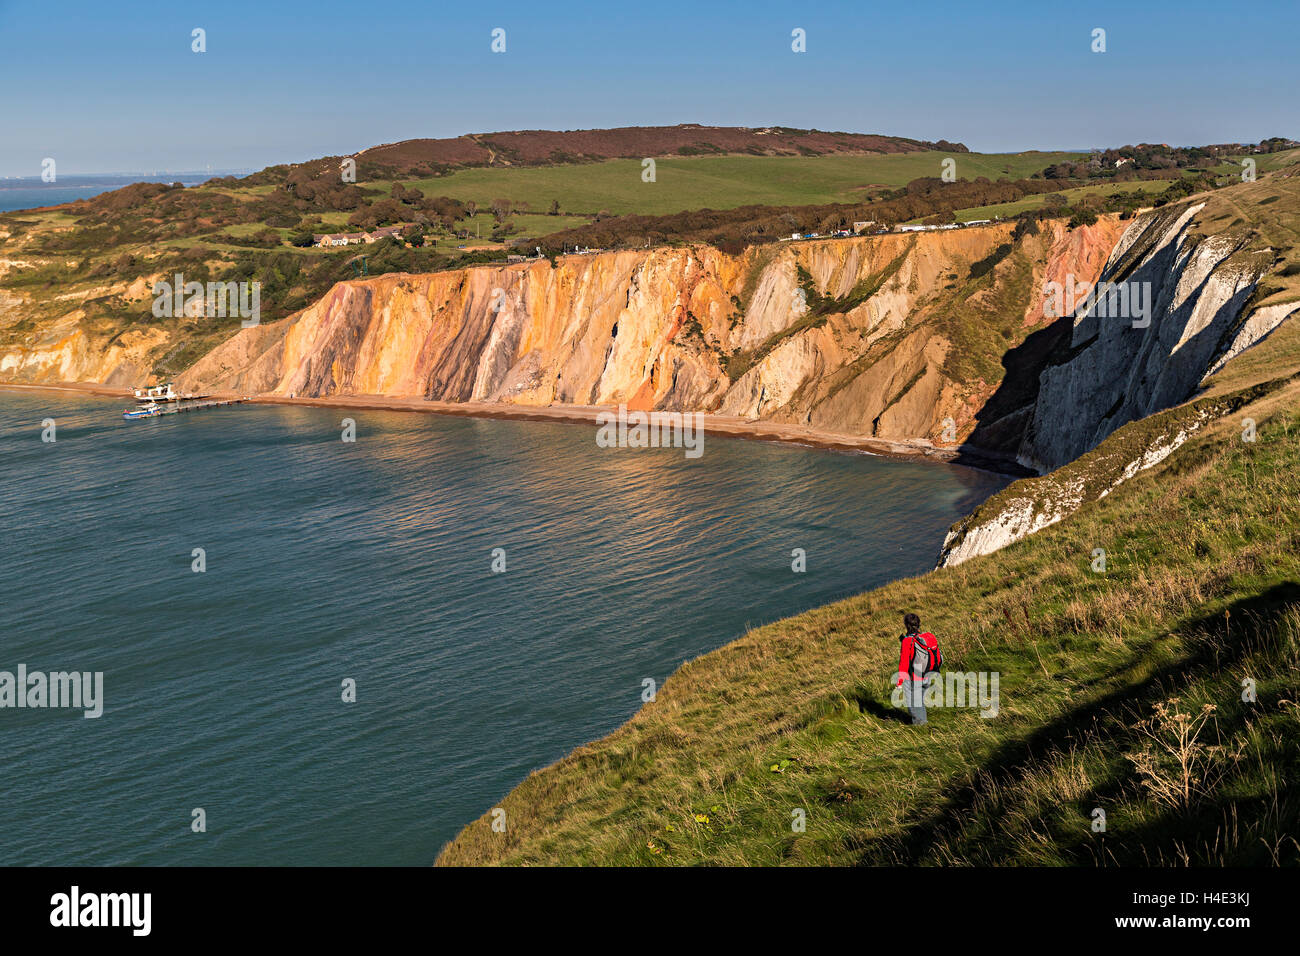 Escursionista presso cliff edge, allume Bay, Isle of Wight, Regno Unito Foto Stock